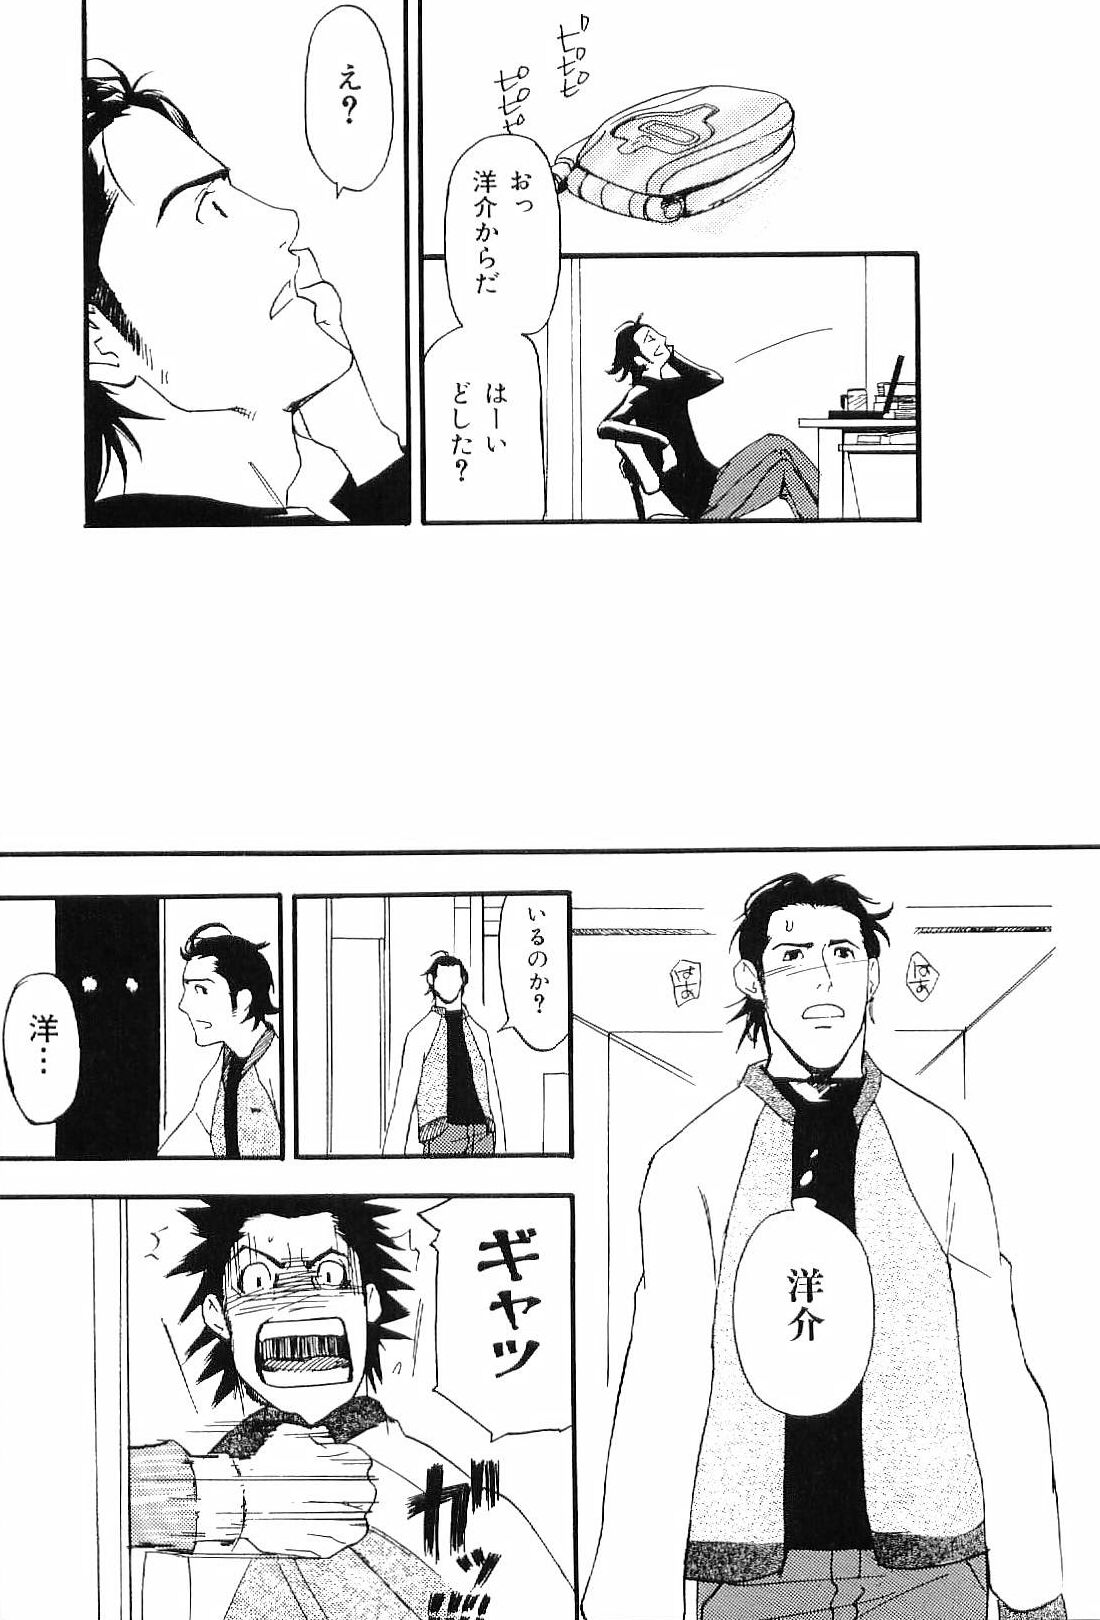 [Anthology] Kinniku Otoko Vol. 7 page 15 full